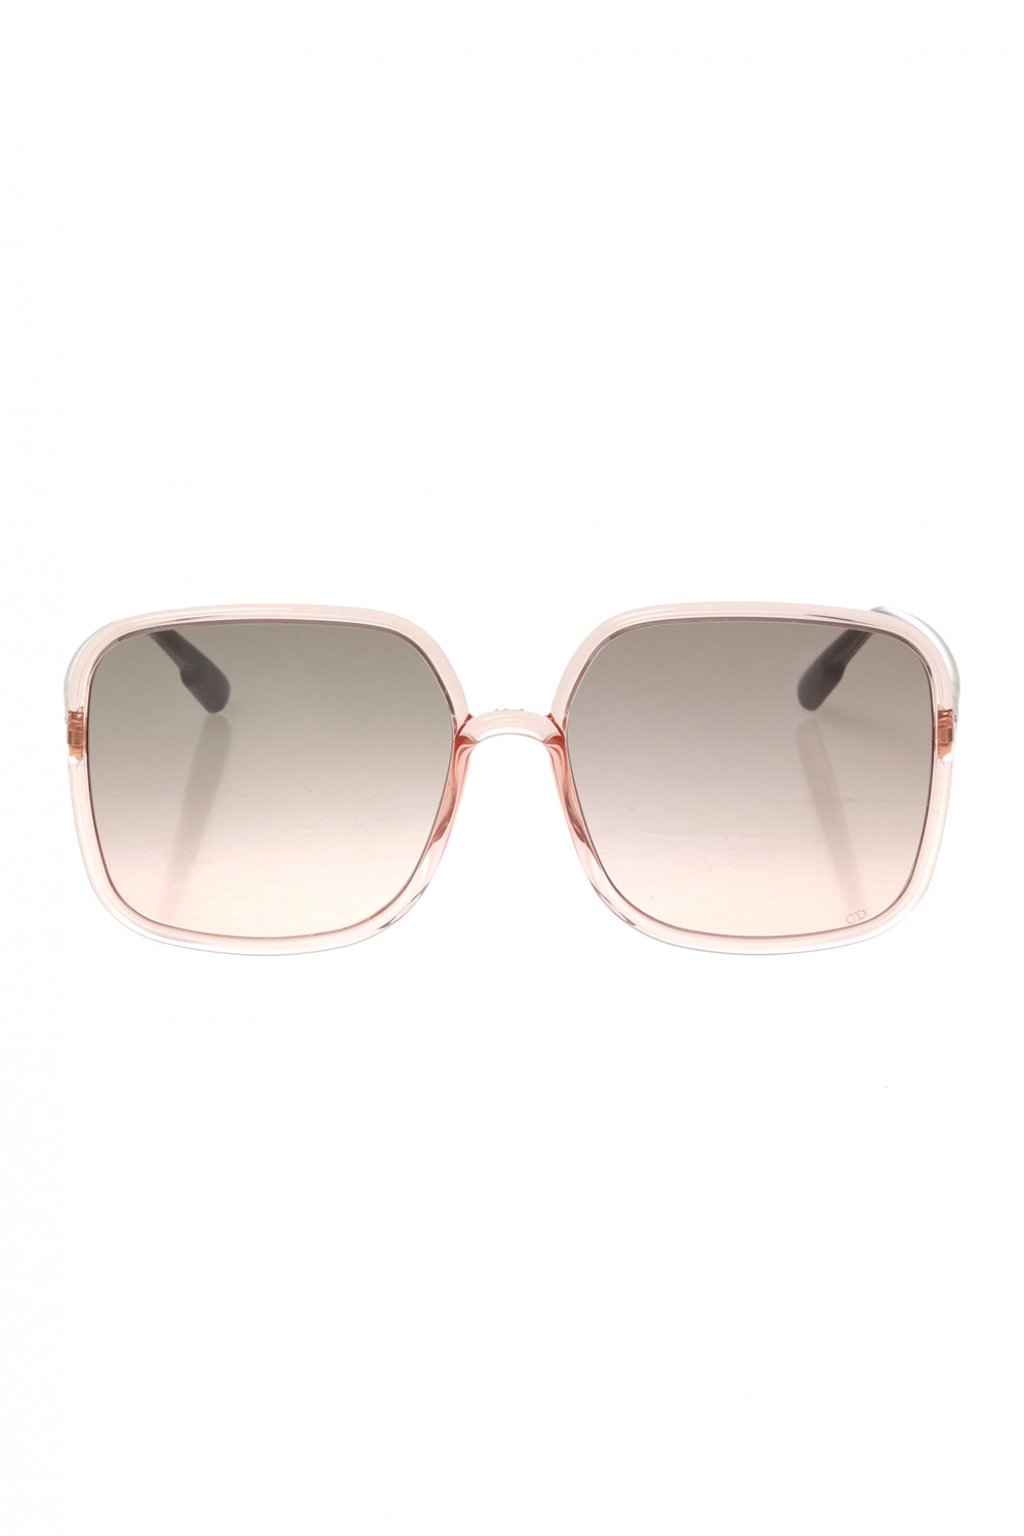 Cream ‘SO Stellaire 1’ sunglasses Dior - Vitkac GB